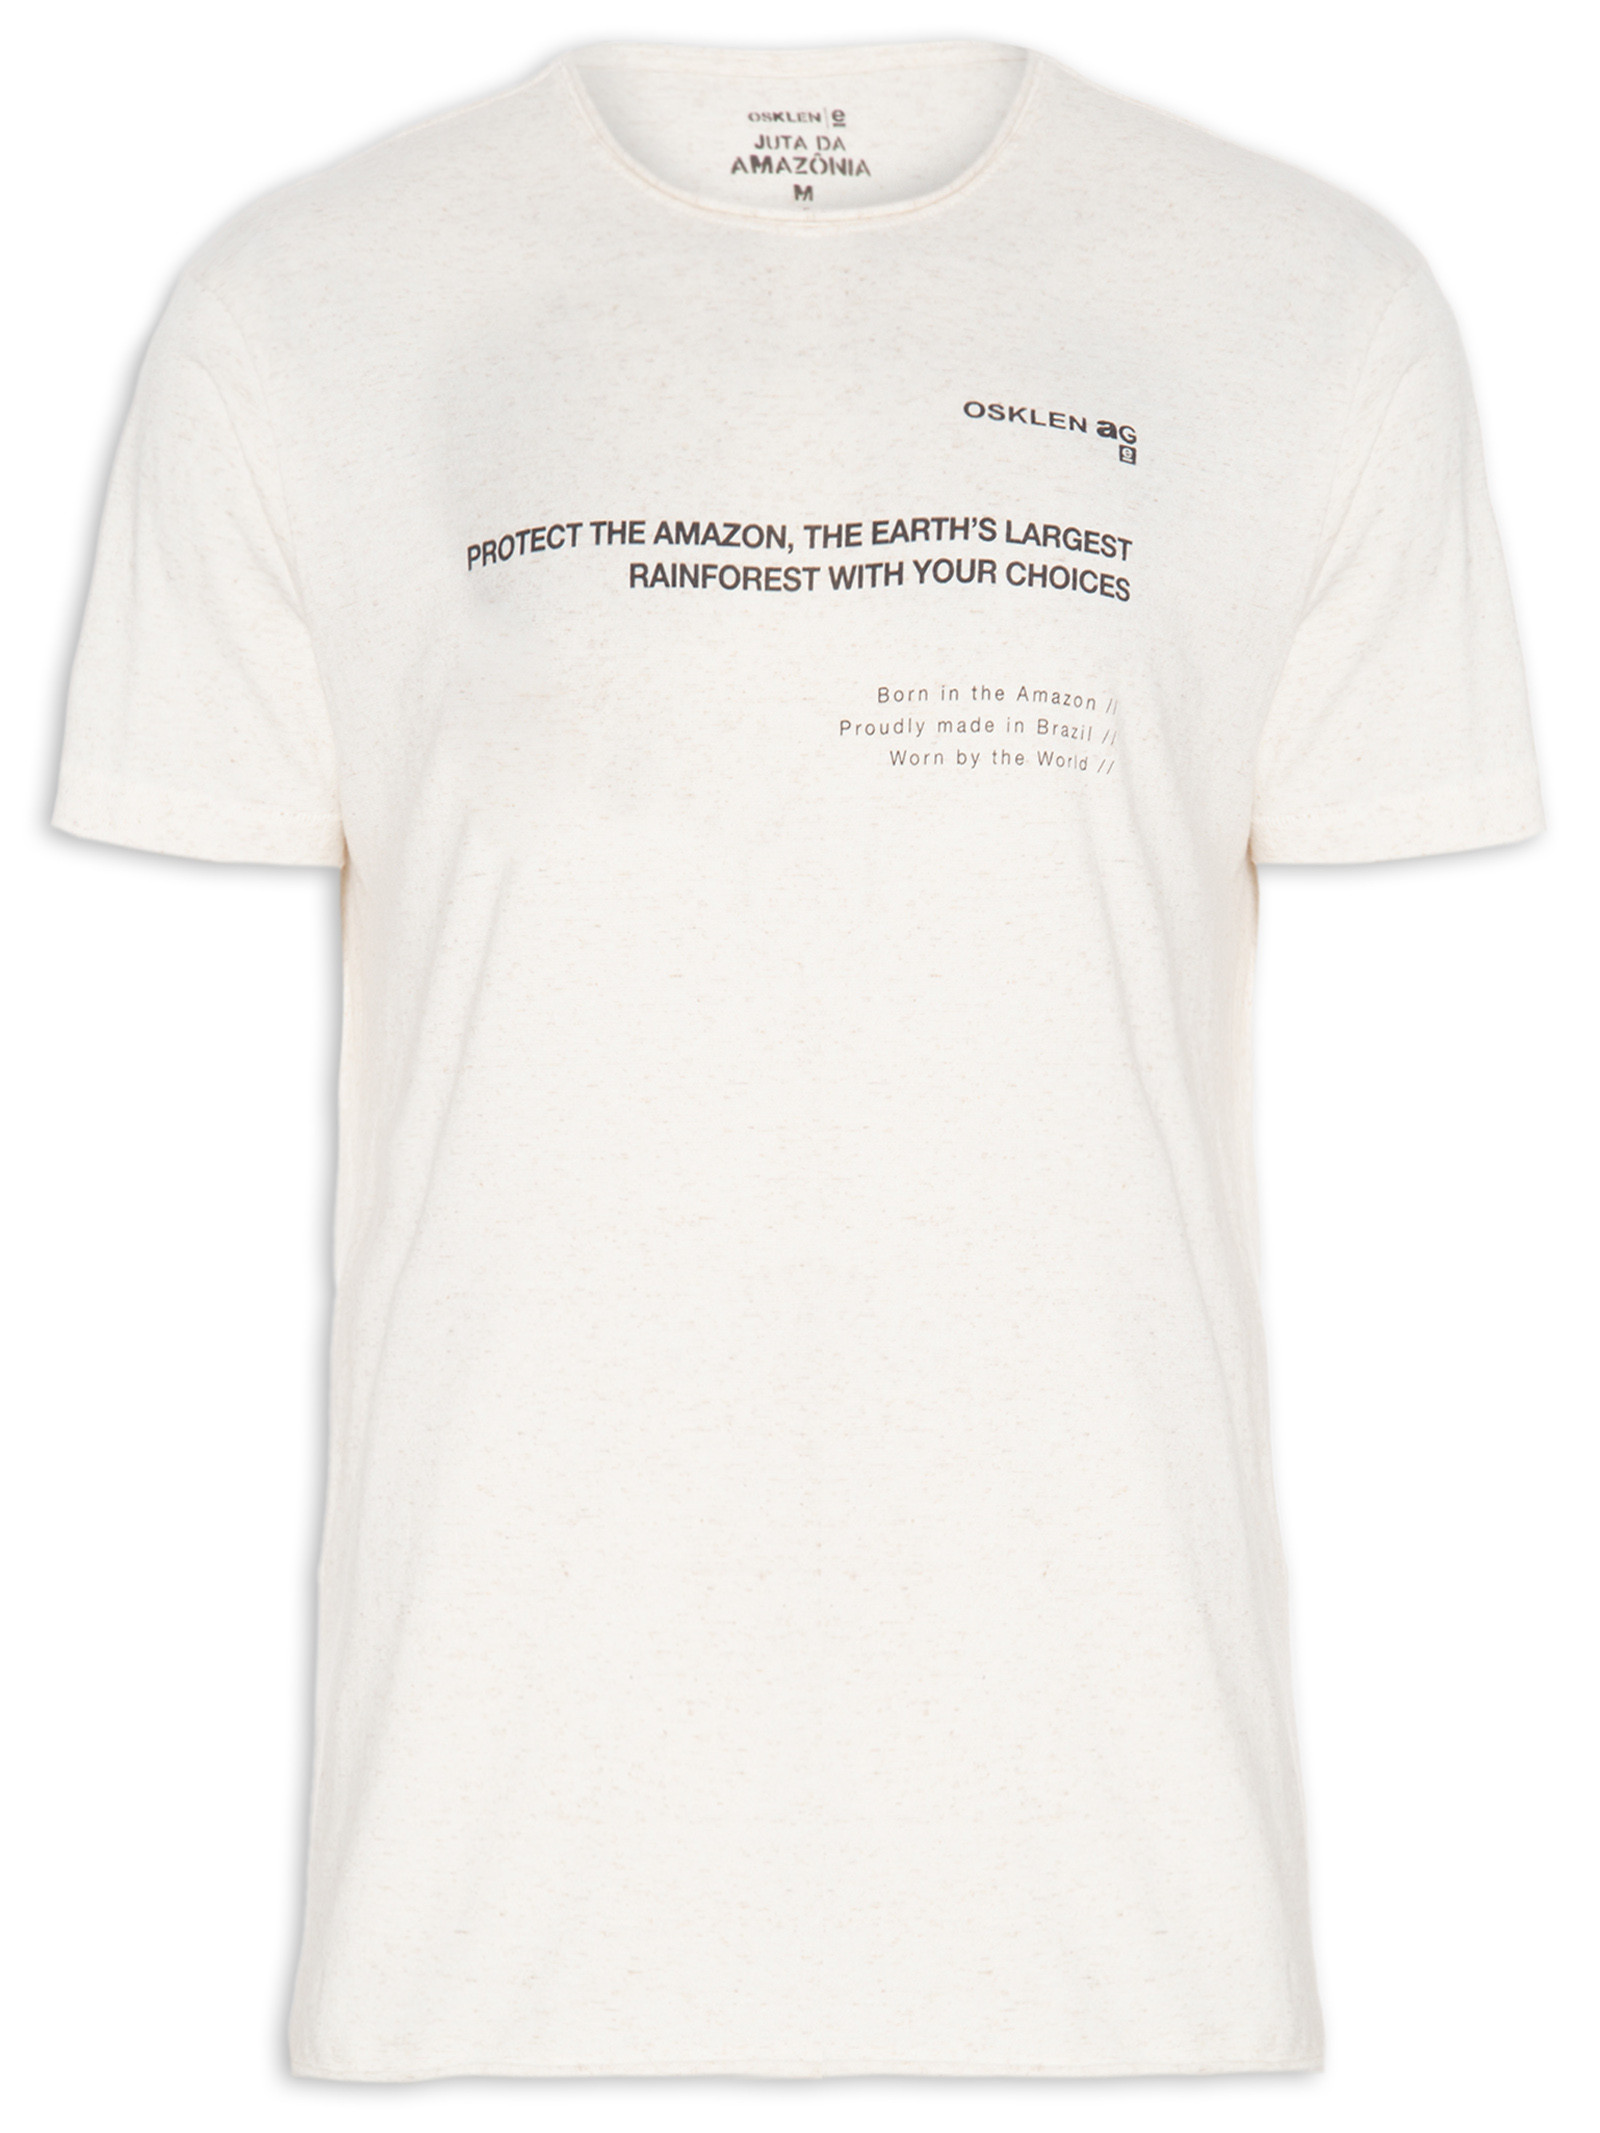 T-shirt Masculina Juta Made In Brazil - Osklen - Off White - Oqvestir